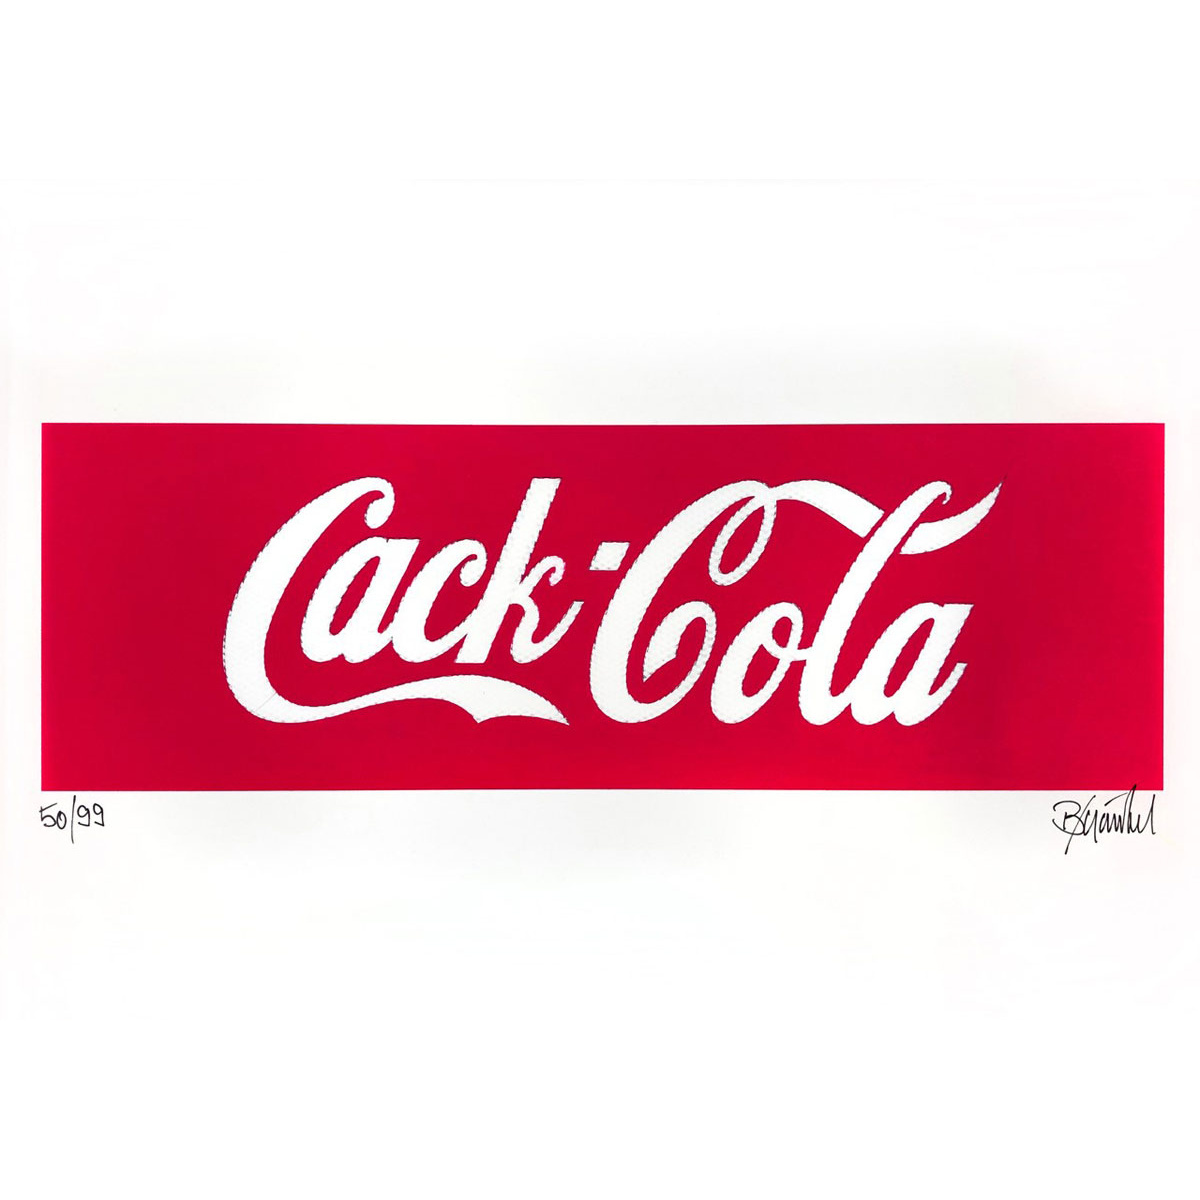 Cack Cola